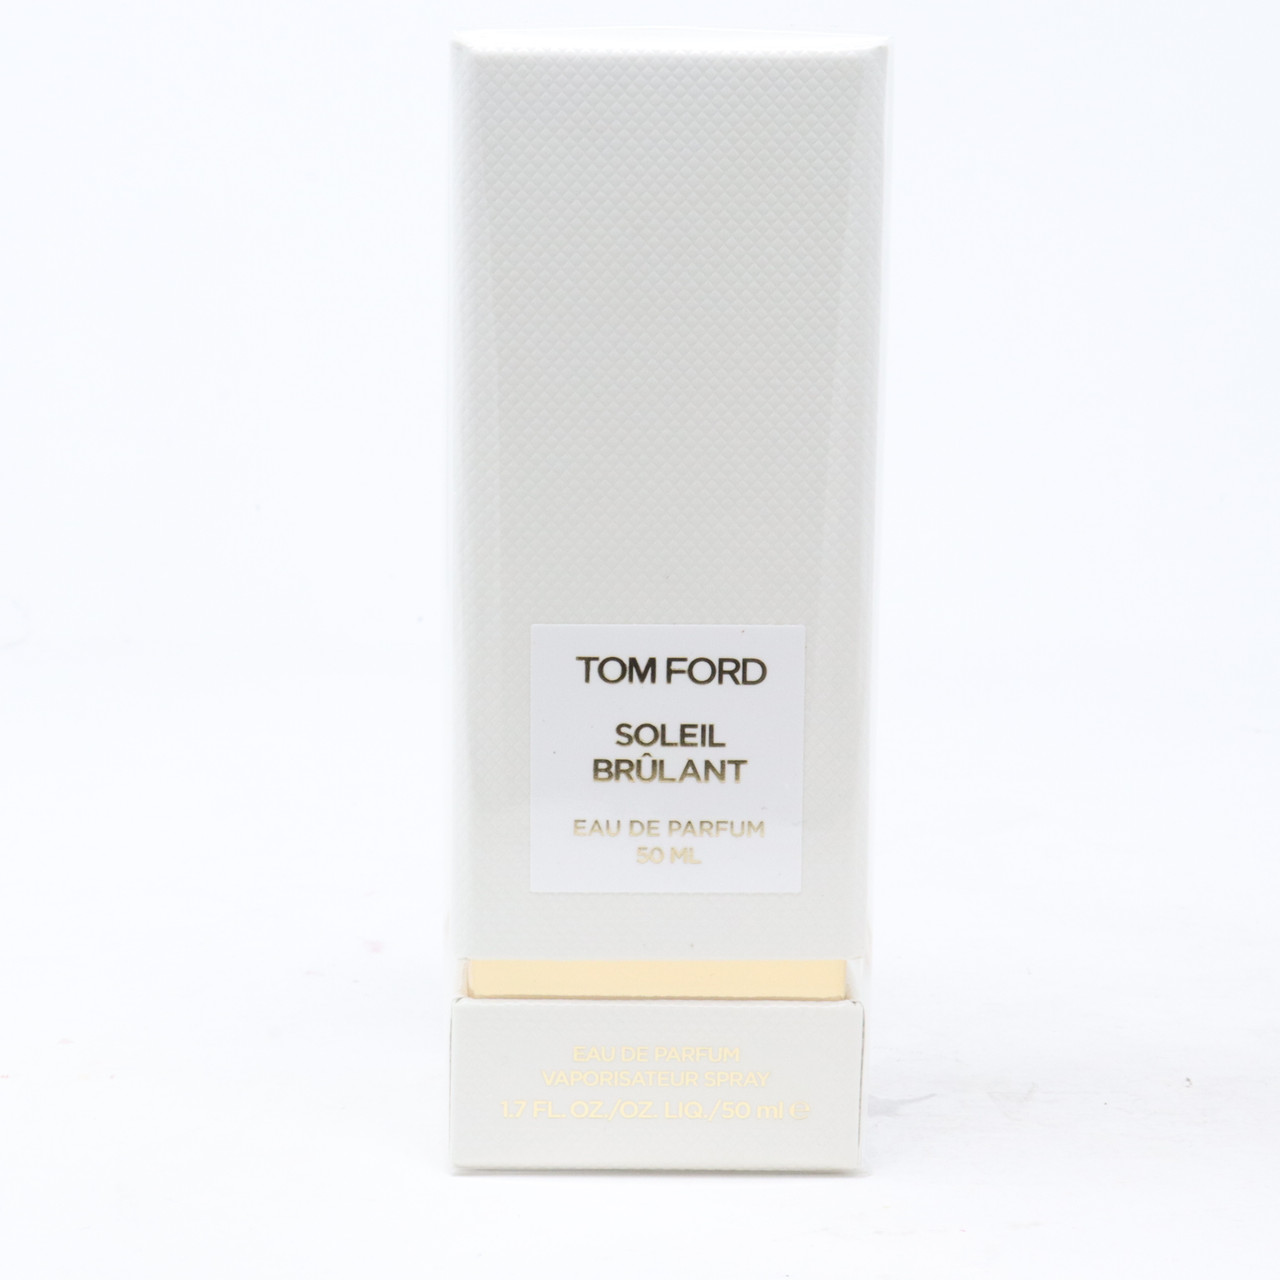 Soleil Brulant by Tom Ford Eau De Parfum 1.7oz/50ml Spray New With Box